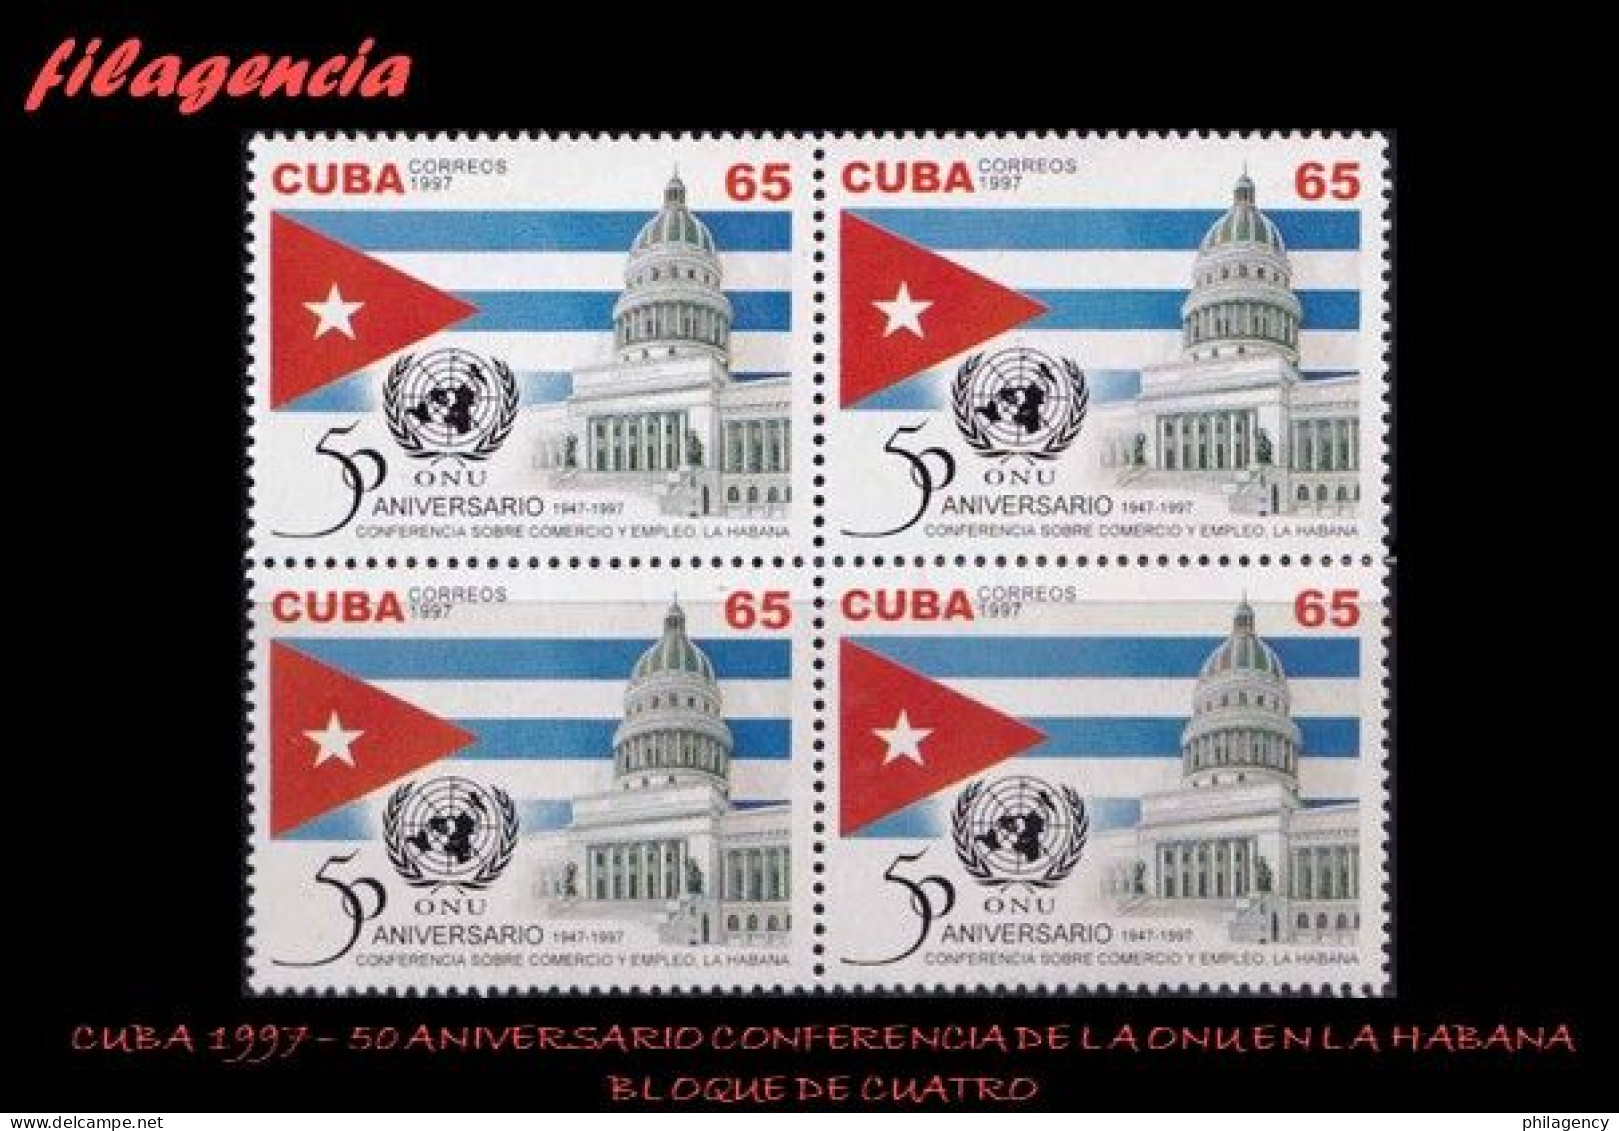 CUBA. BLOQUES DE CUATRO. 1997-28 50 AÑOS DE LA CONFERENCIA DE NACIONES UNIDAS SOBRE COMERCIO & EMPLEO EN LA HABANA - Nuevos